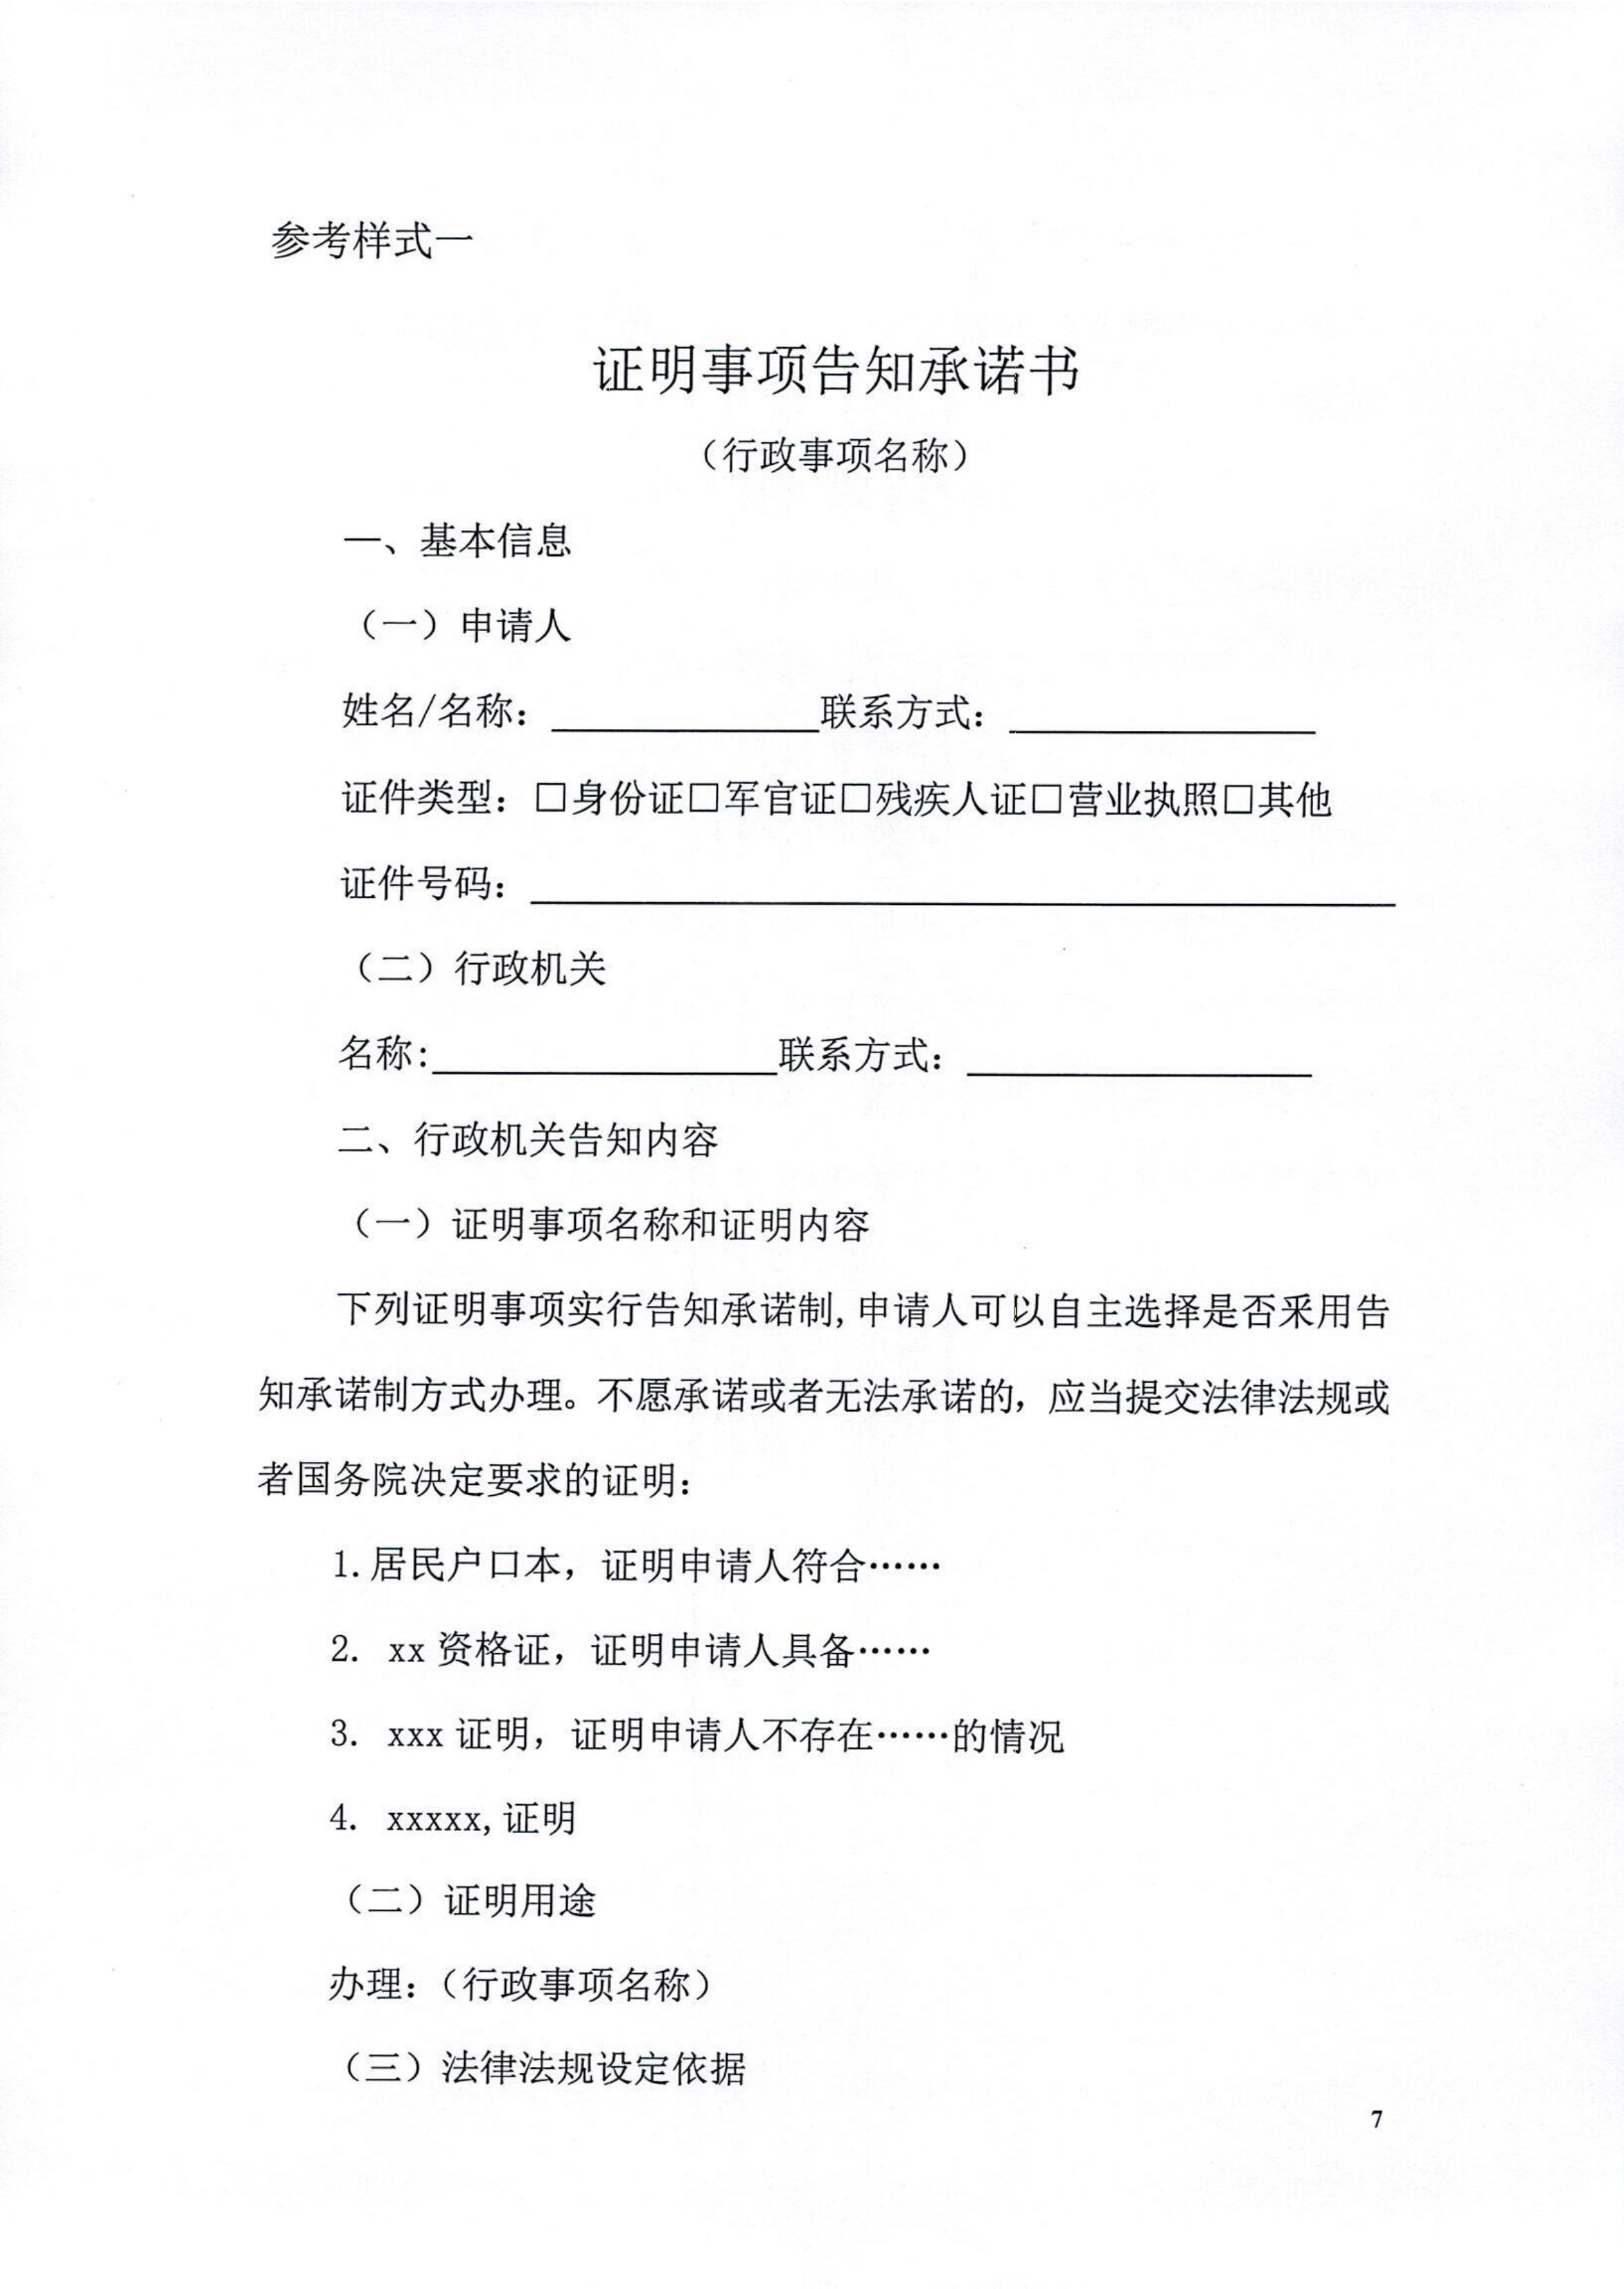 湛江市司法局关于印发湛江市全面推行证明事项告知承诺制工作实施方案的通知_07.jpg